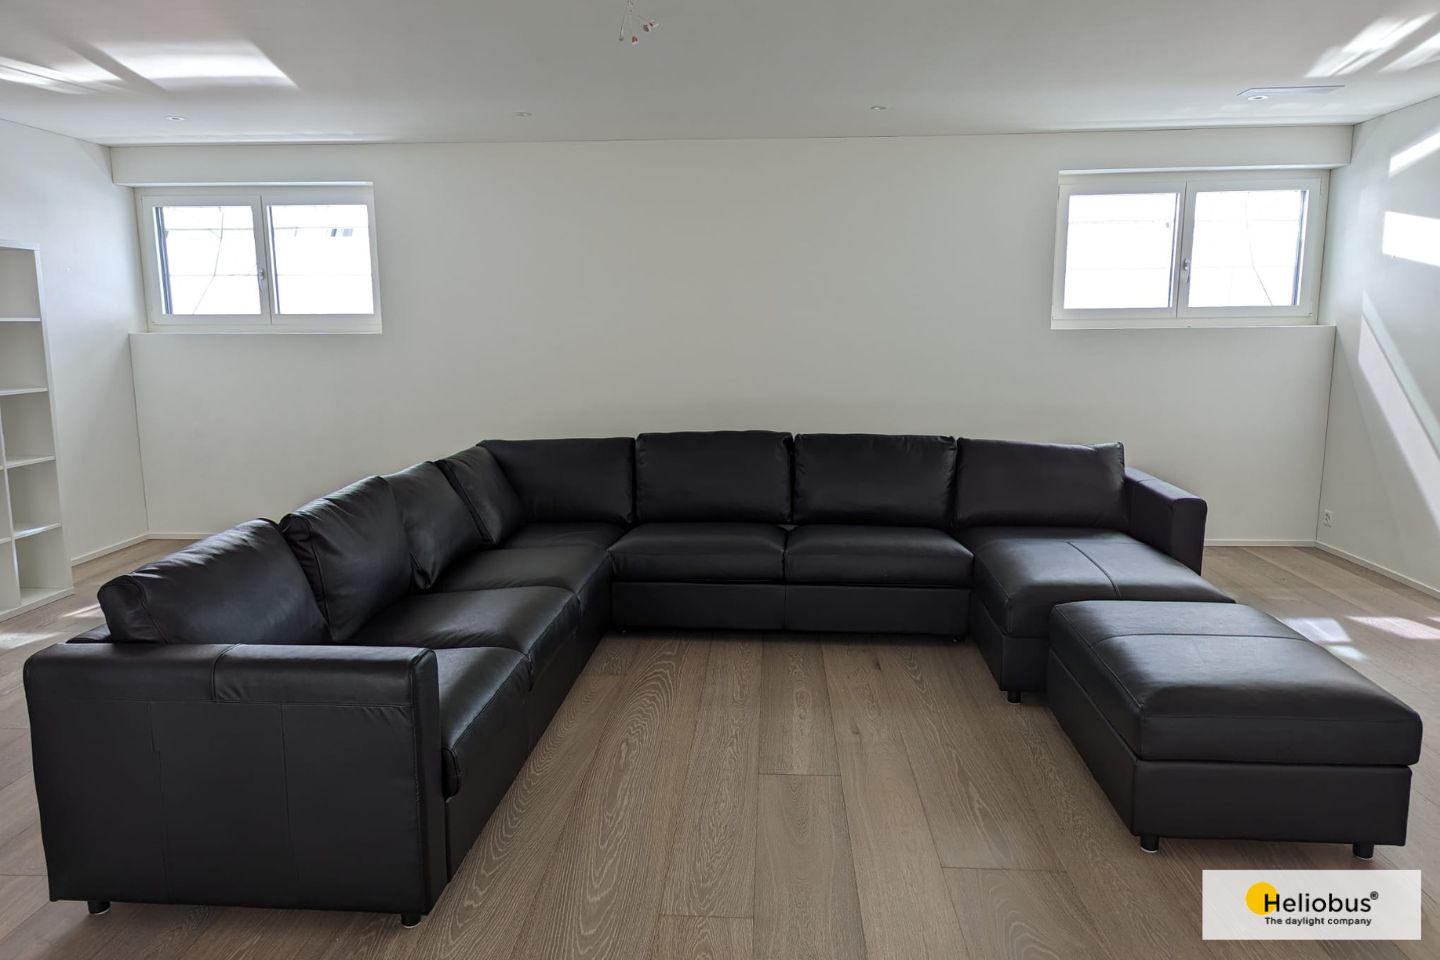 Sofa steht im Untergeschoss vor Wand mit zwei Fenstern voller Tageslicht